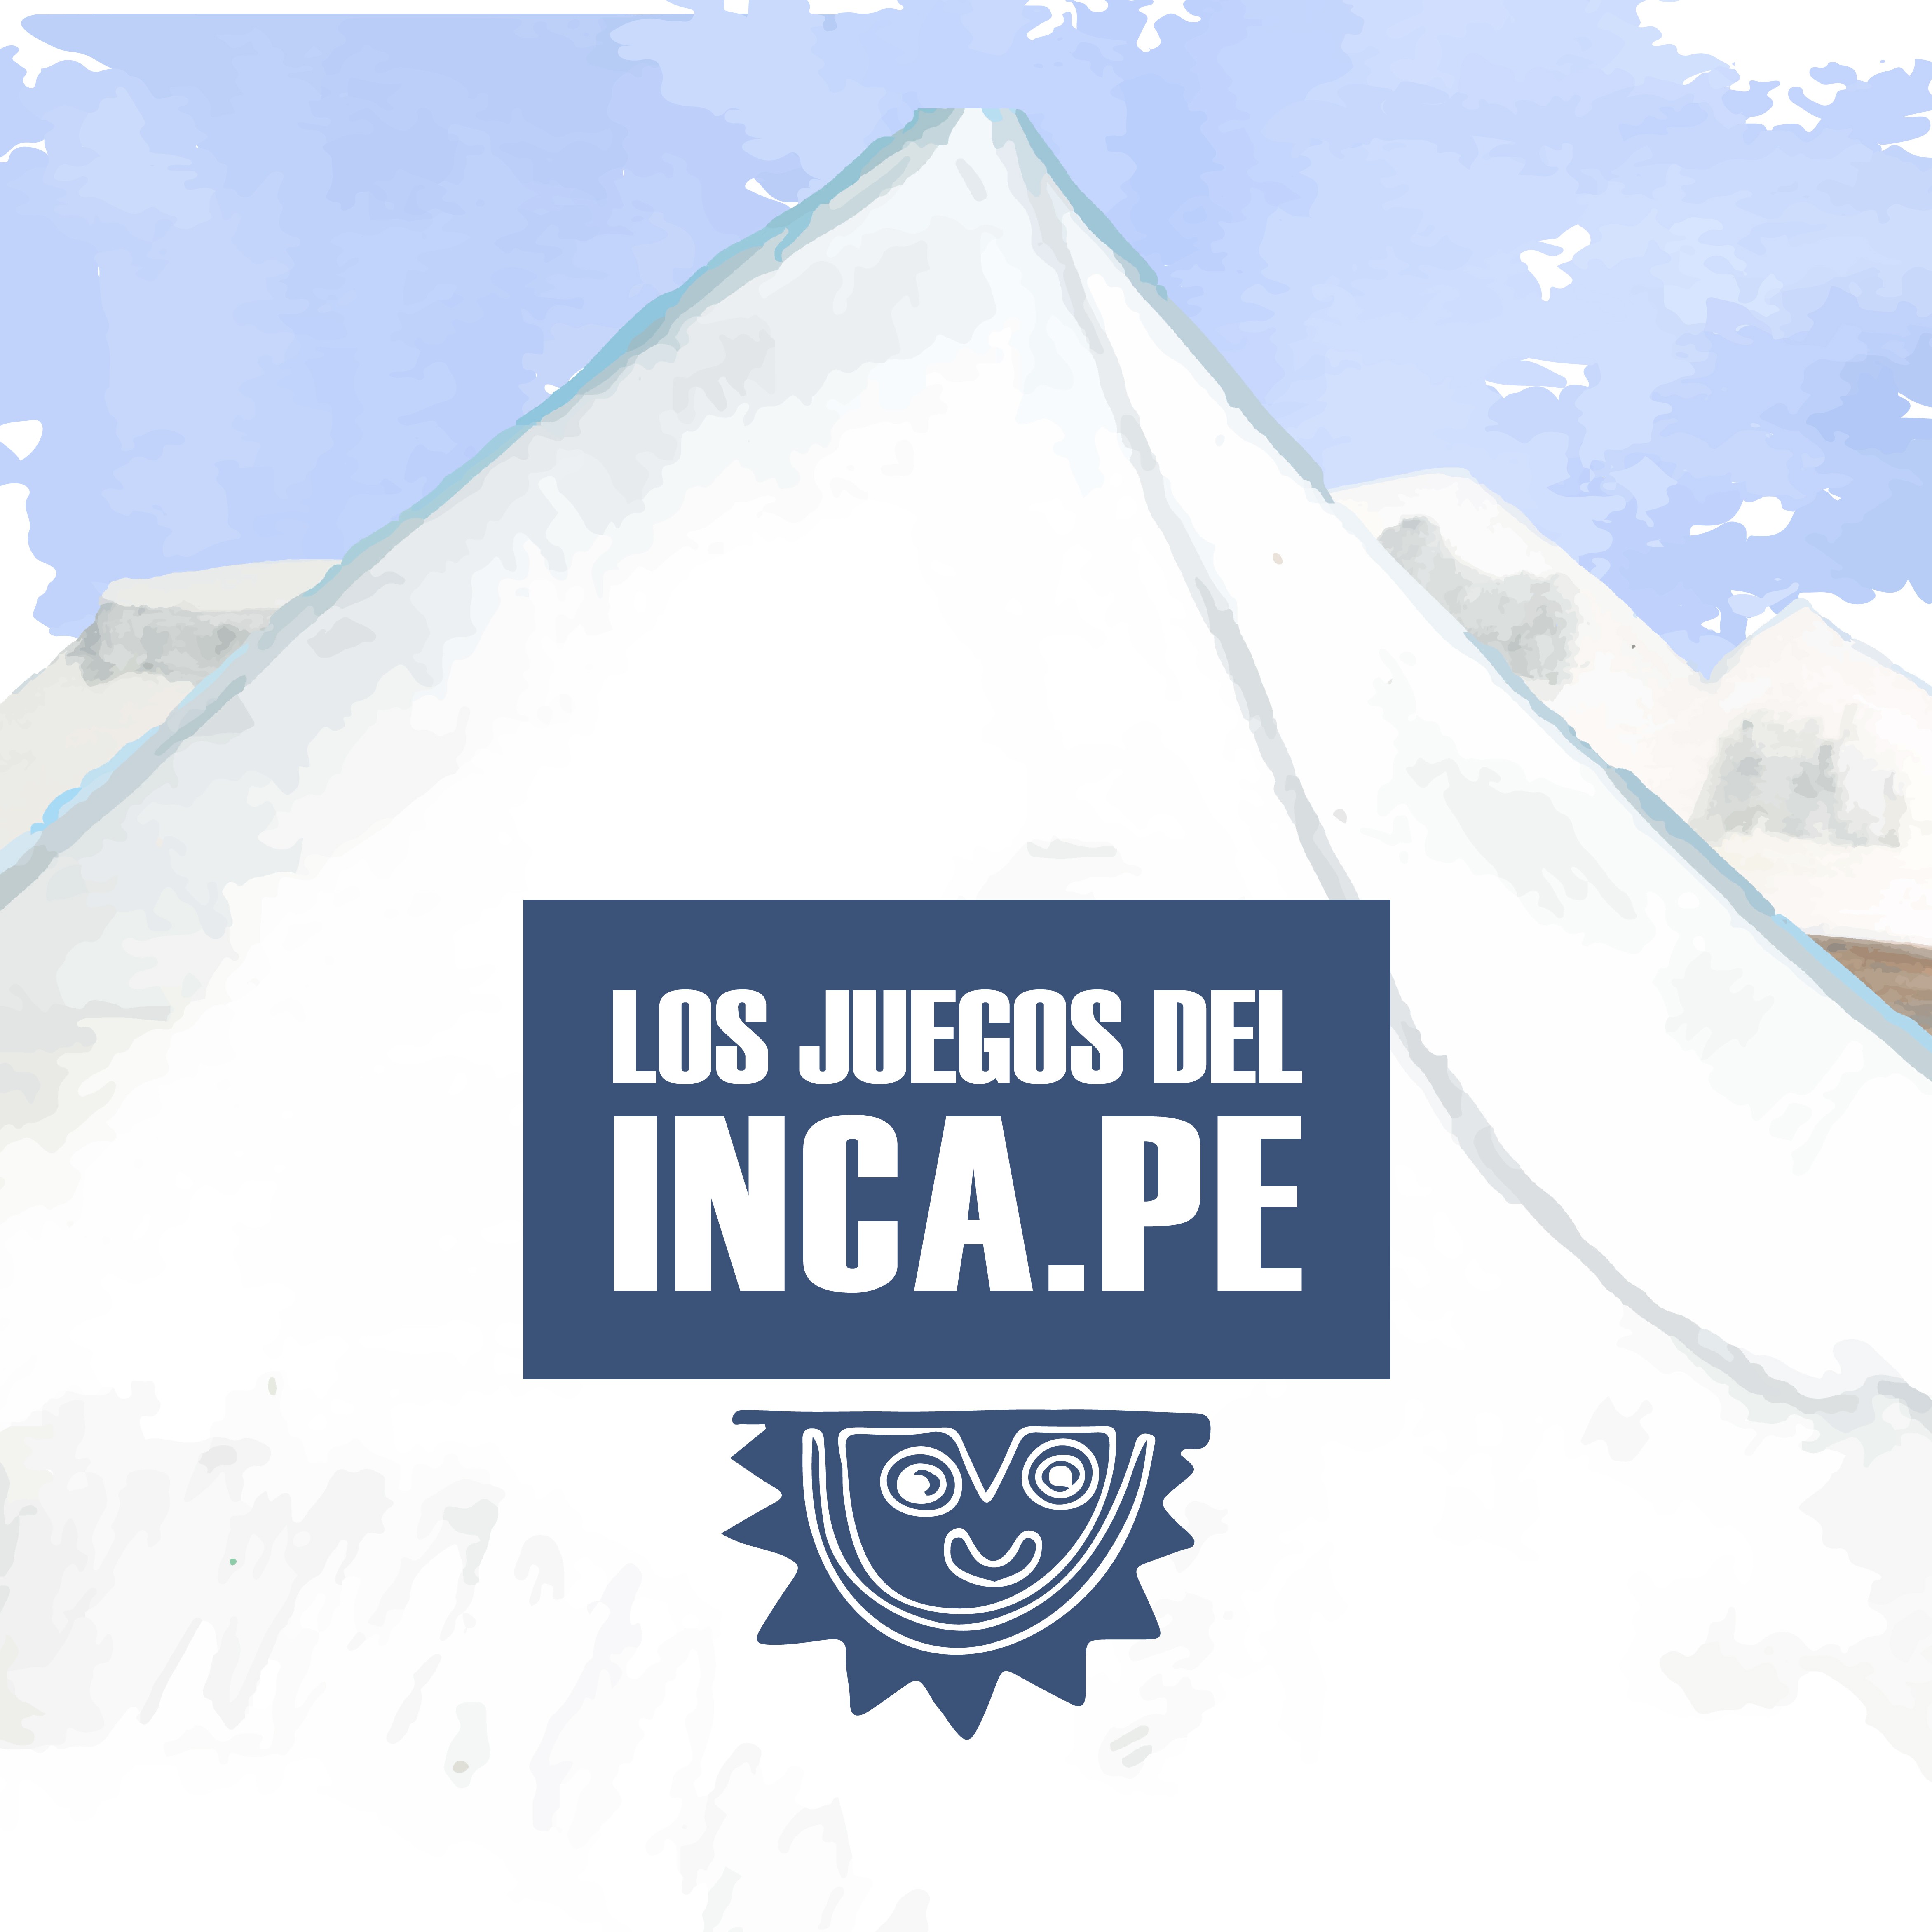 Los juegos del Inca